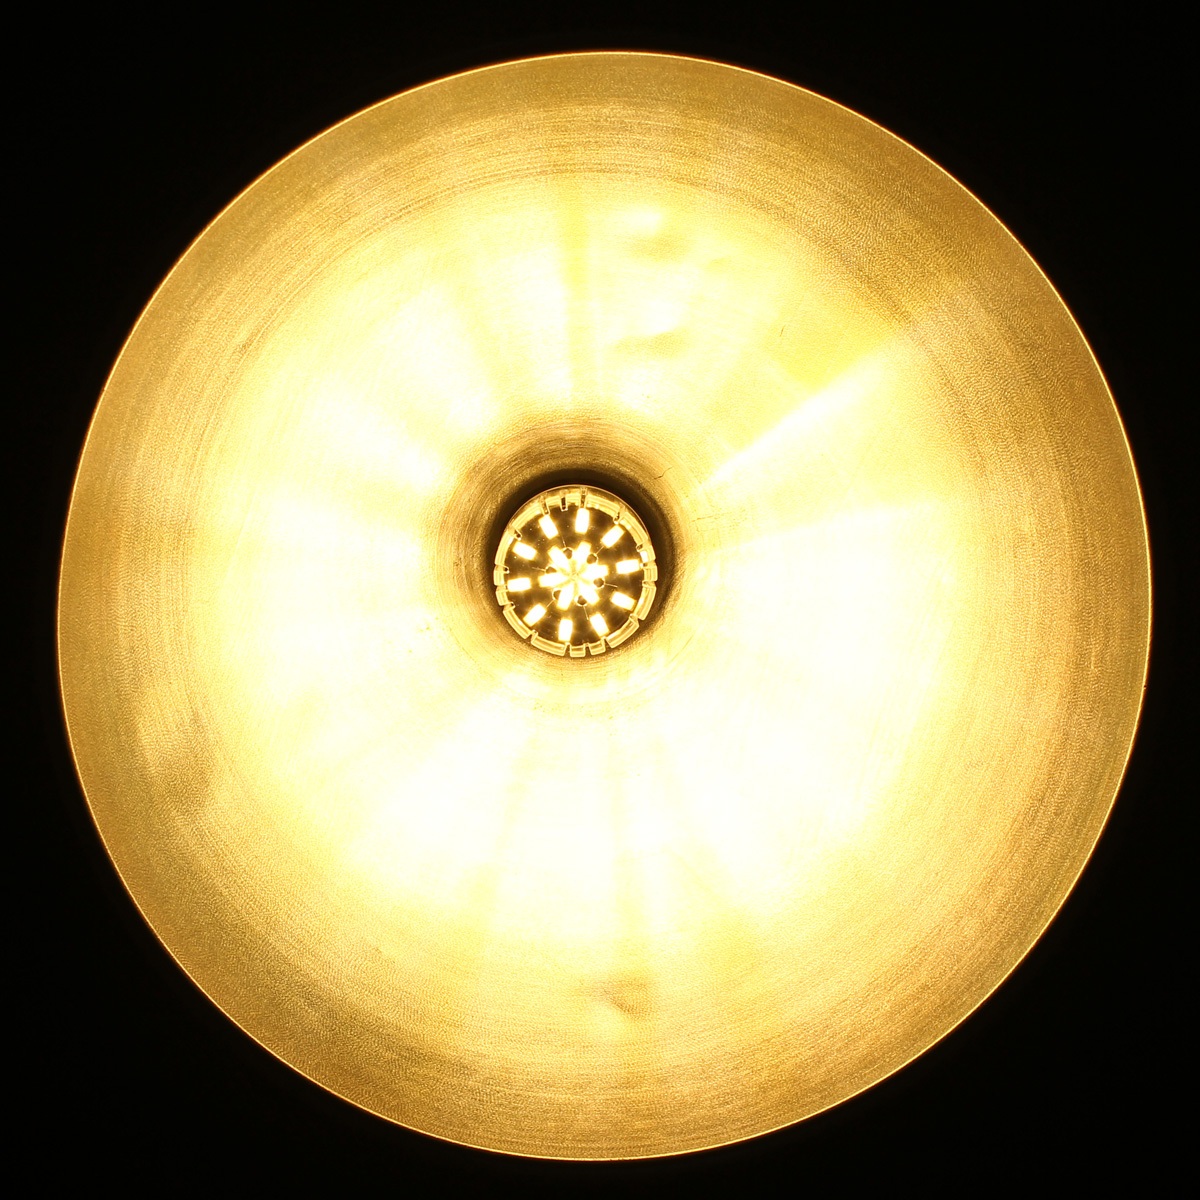 E14-E27-B22-10W-136-SMD-5733-1500LM-LED-Cover-Corn-Light-Lamp-Bulb-AC-110V-1031877